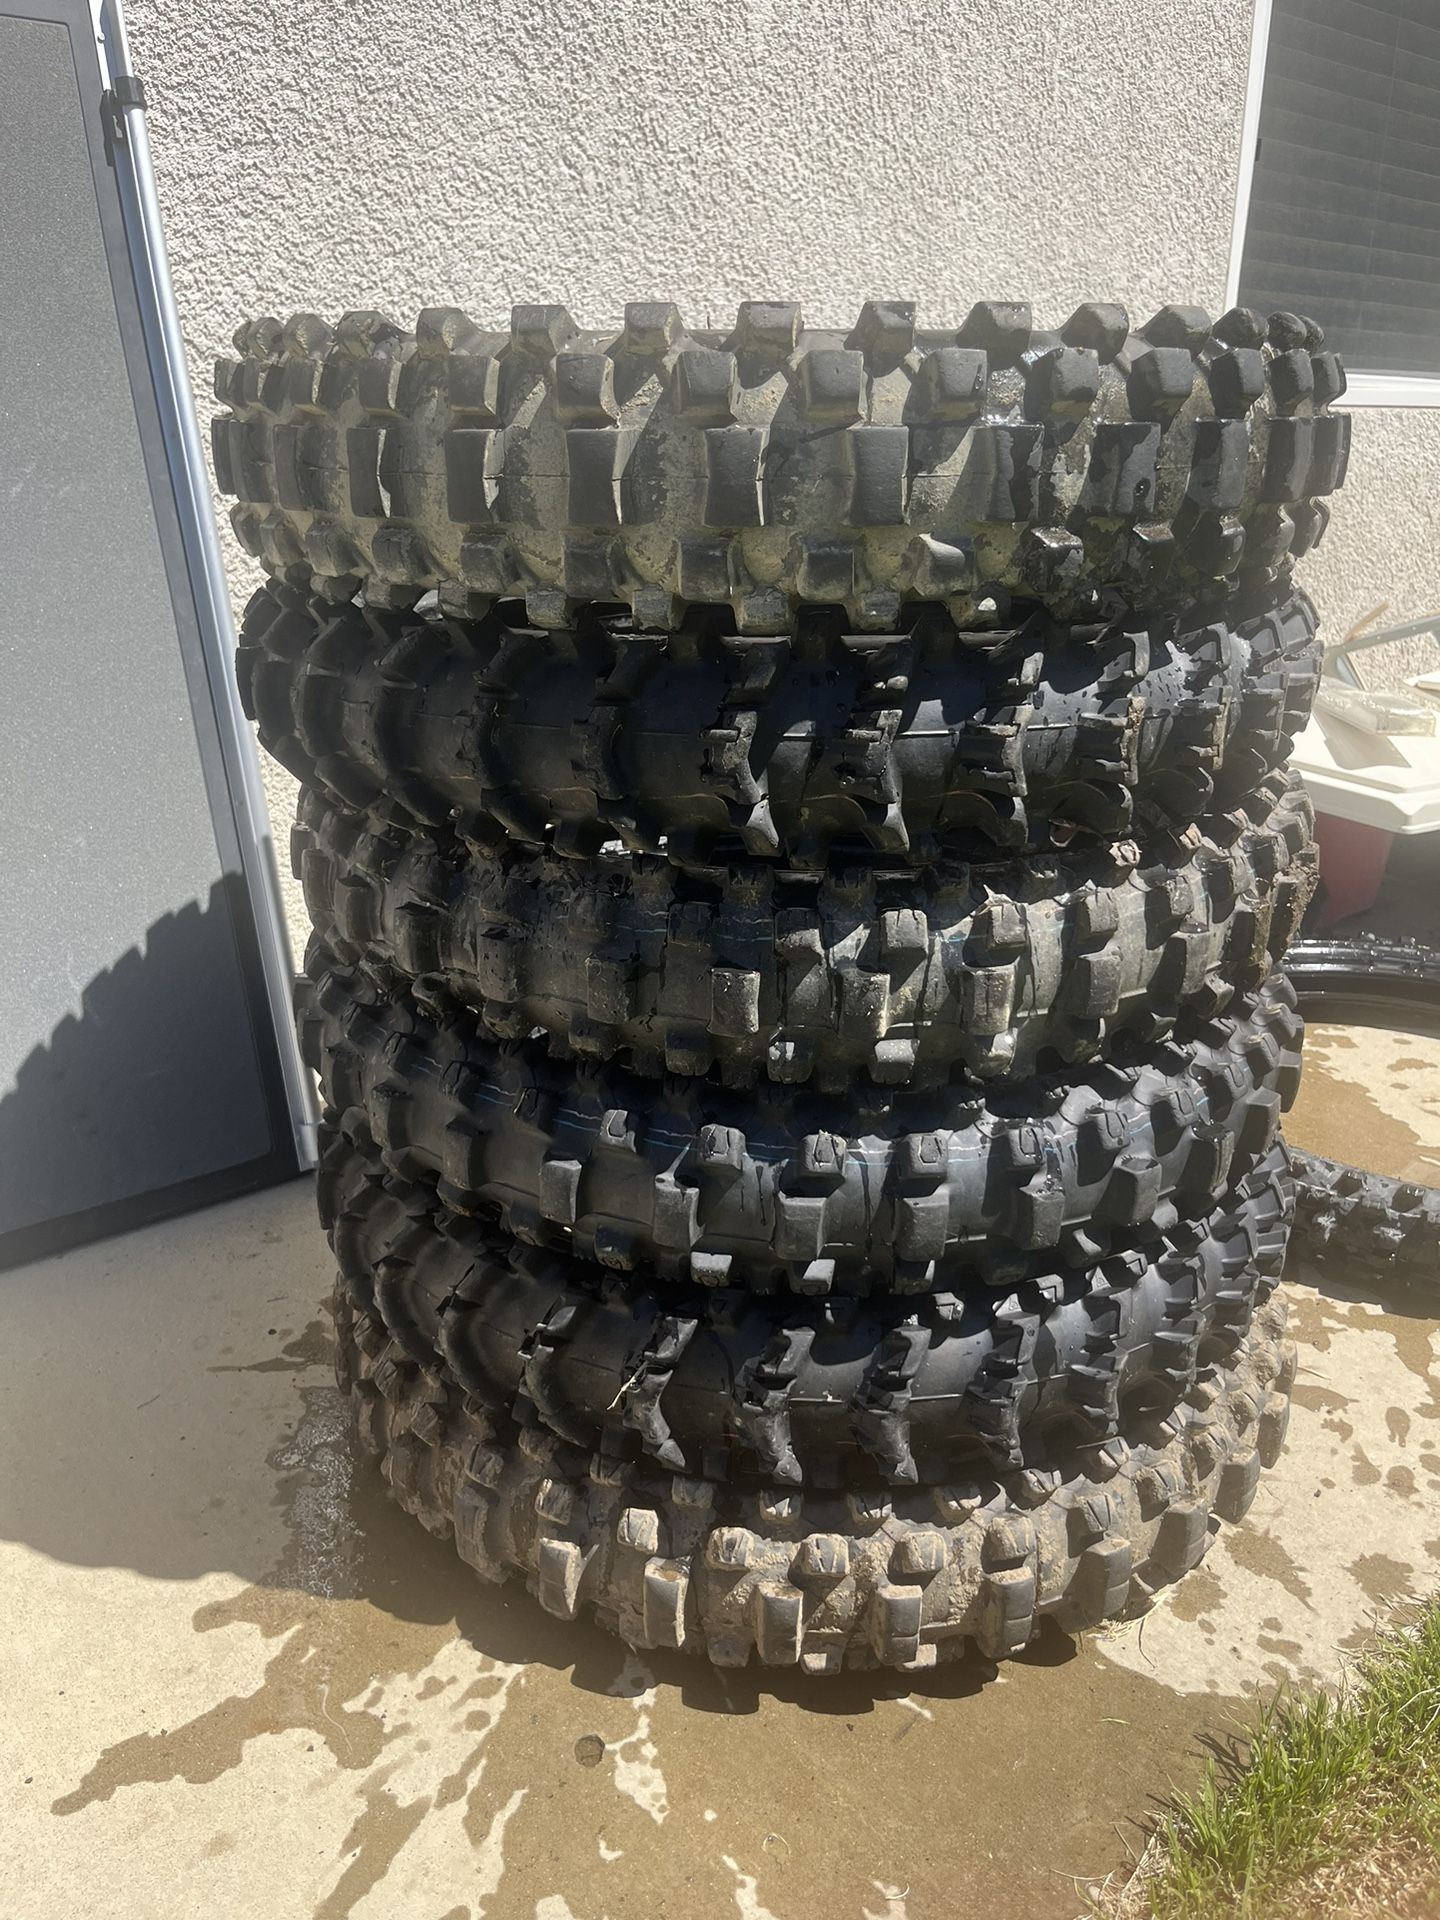 Dirt Bike Tires Dunlop 